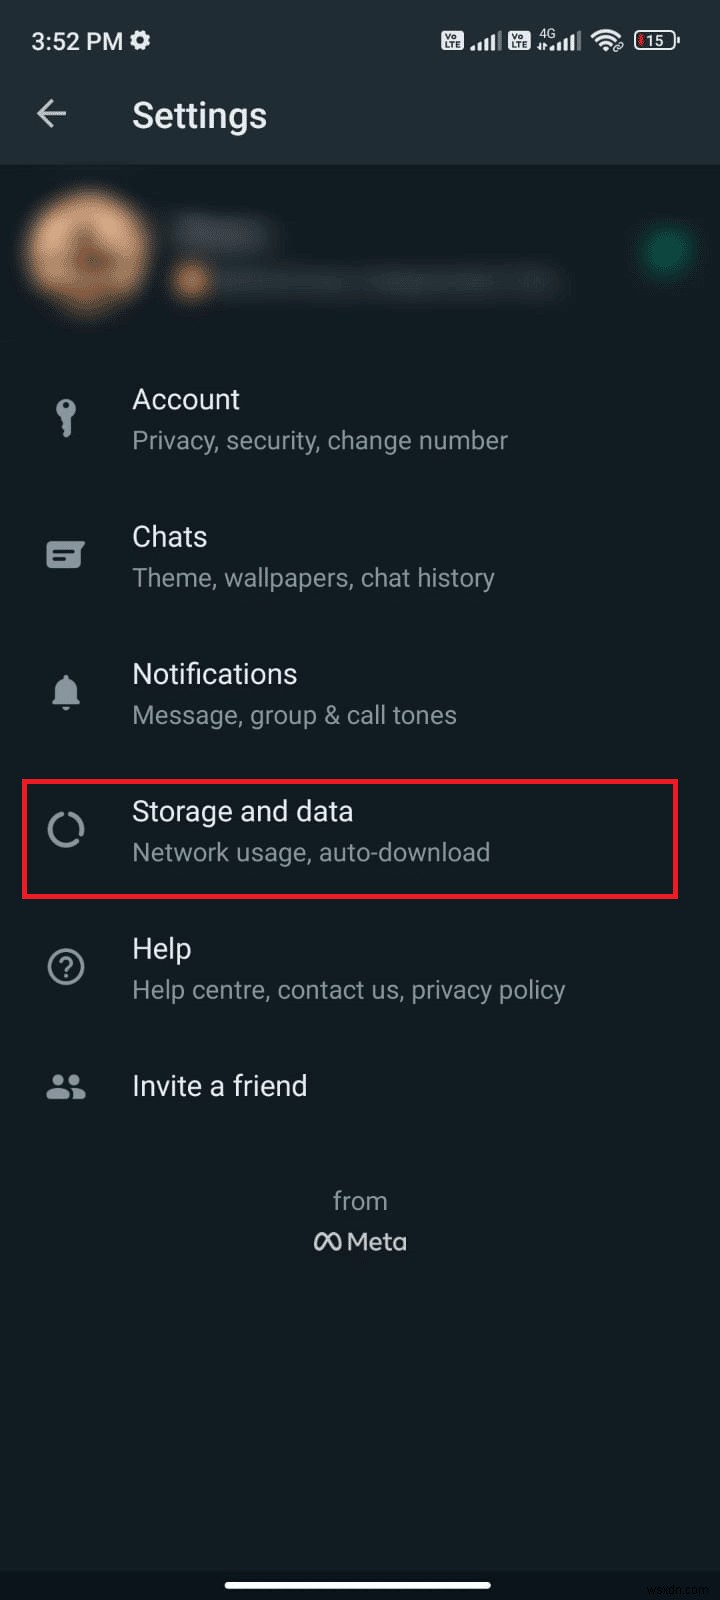 Khắc phục sự cố WhatsApp bị ngừng hoạt động hôm nay trên Android